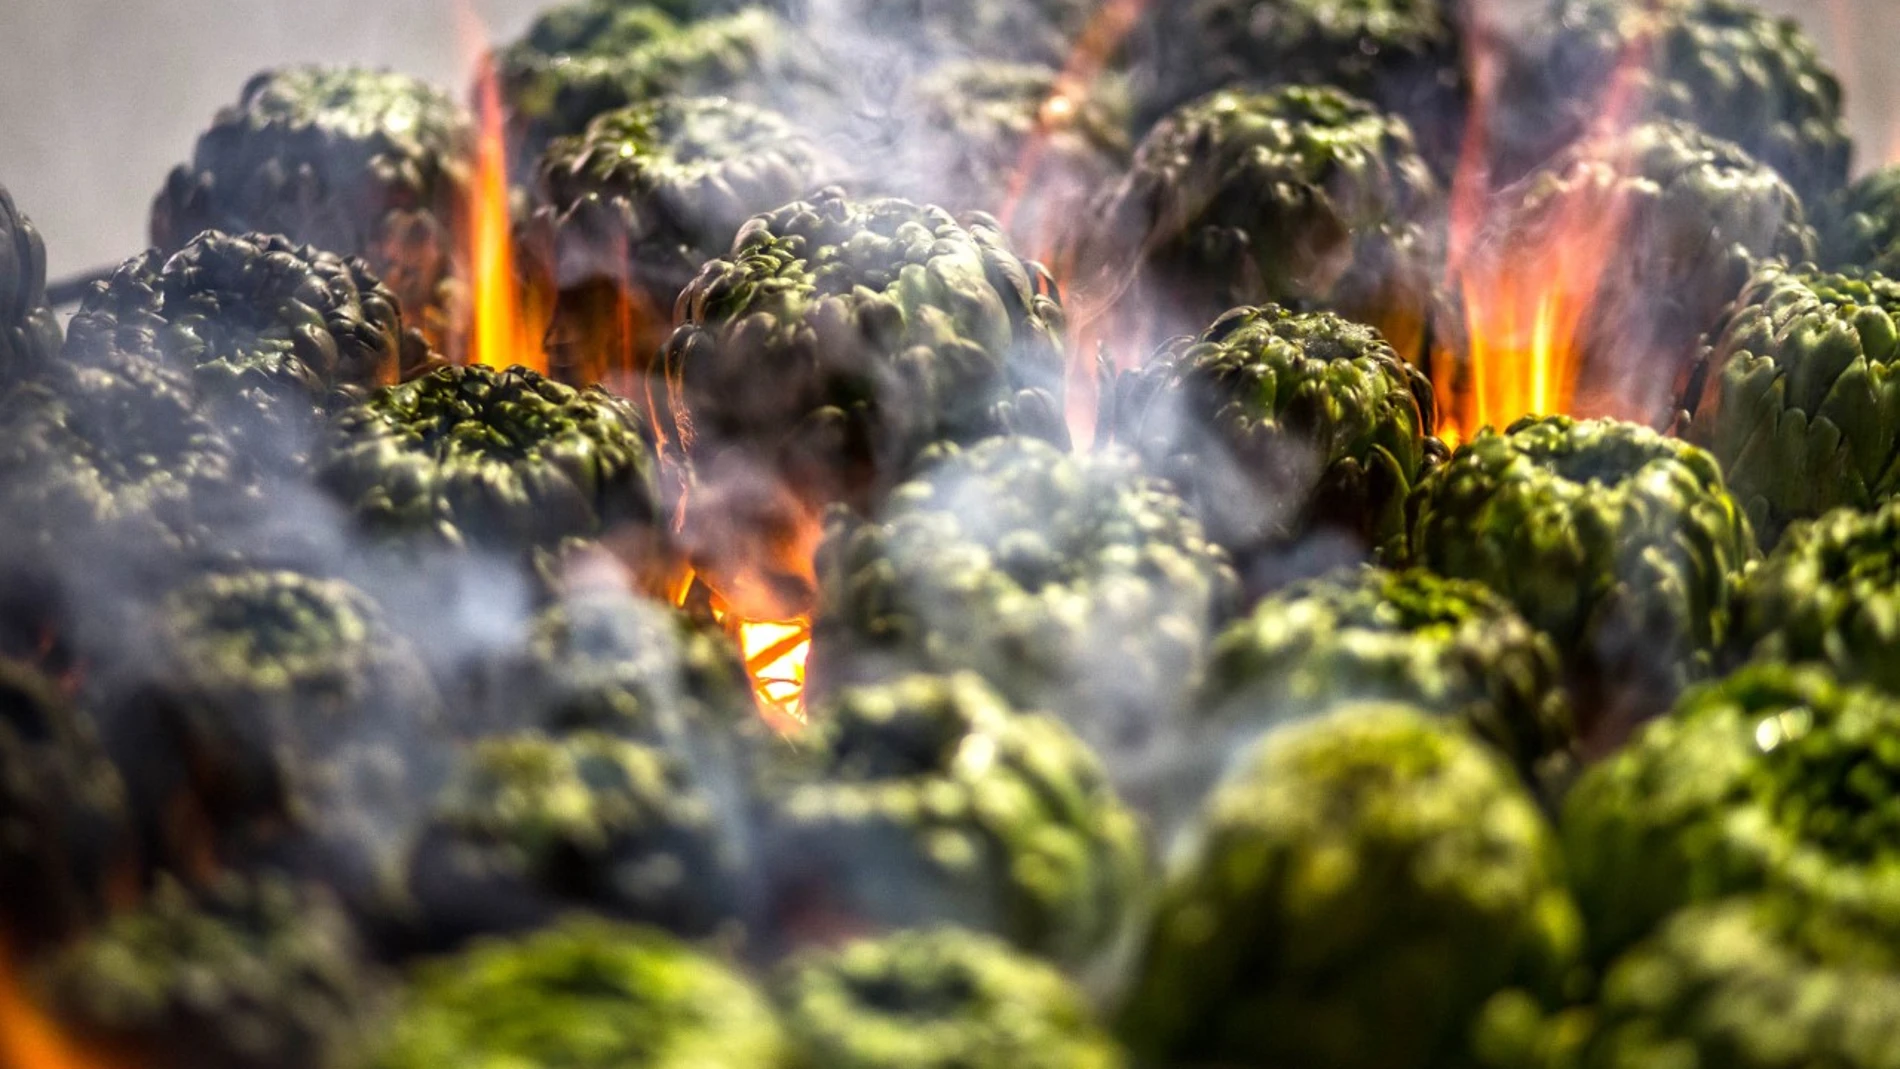 La alcachofa pasa de la generosidad coronaria al detalle de las hojas sin perder, en ningún caso, sus nociones de grandiosidad culinaria